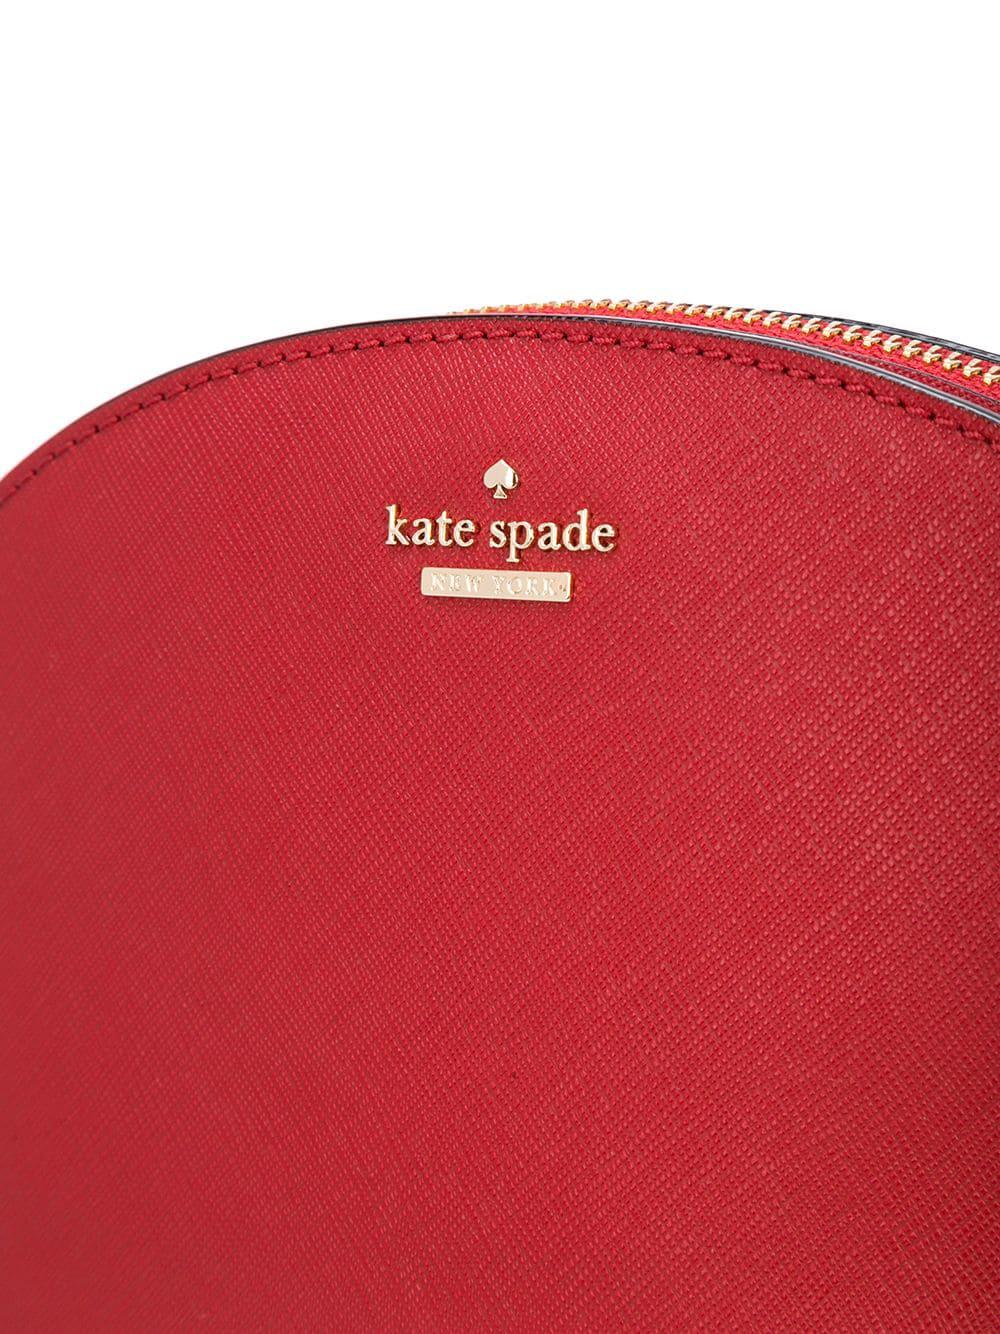 Kate Spade Half Moon Crossbody Bag in Red